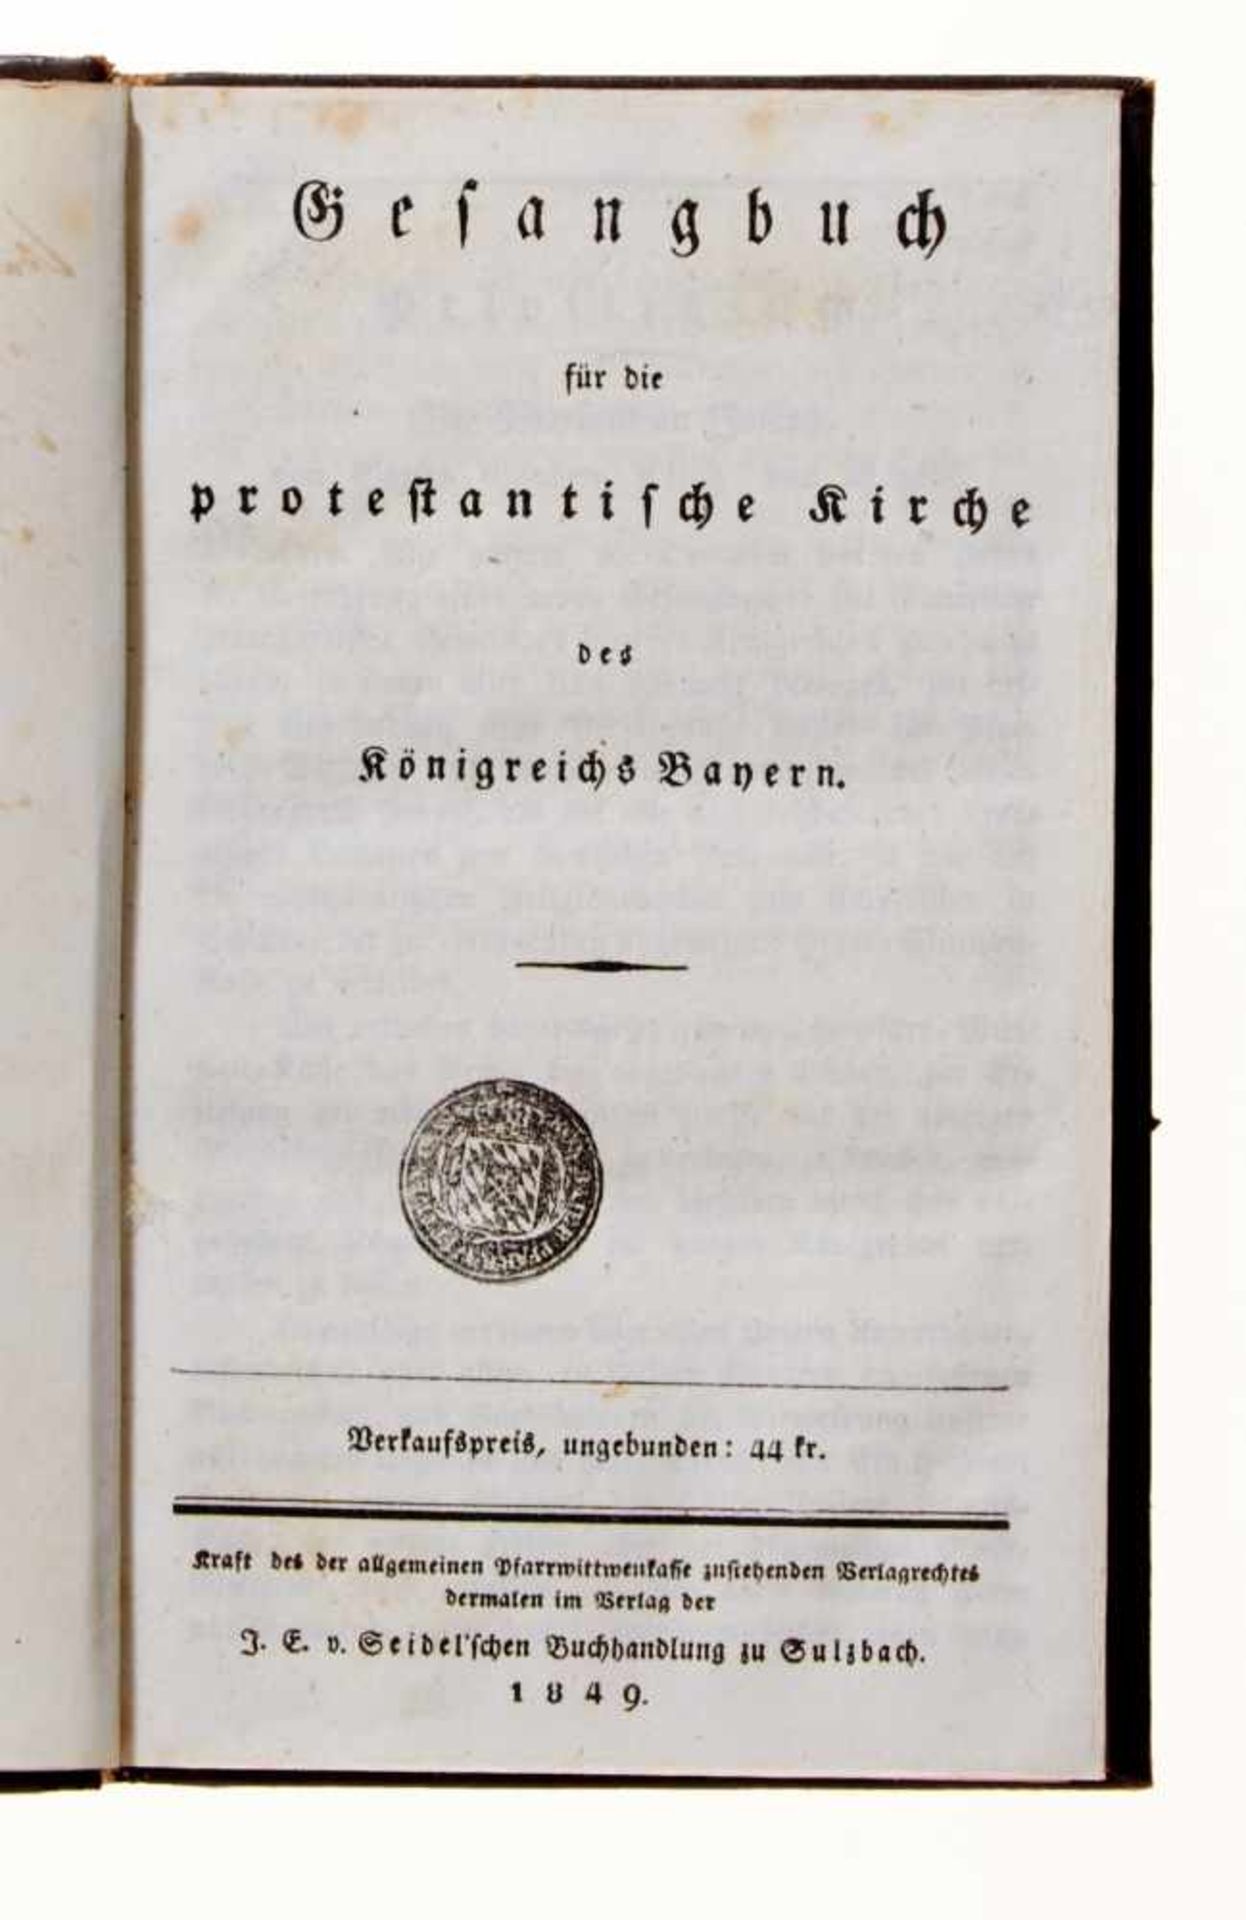 Sulzbach- Gesangbuch für die protestantische Kirche des Königreichs Bayern. Sulzbach,Seidel, 1849. - Bild 2 aus 3